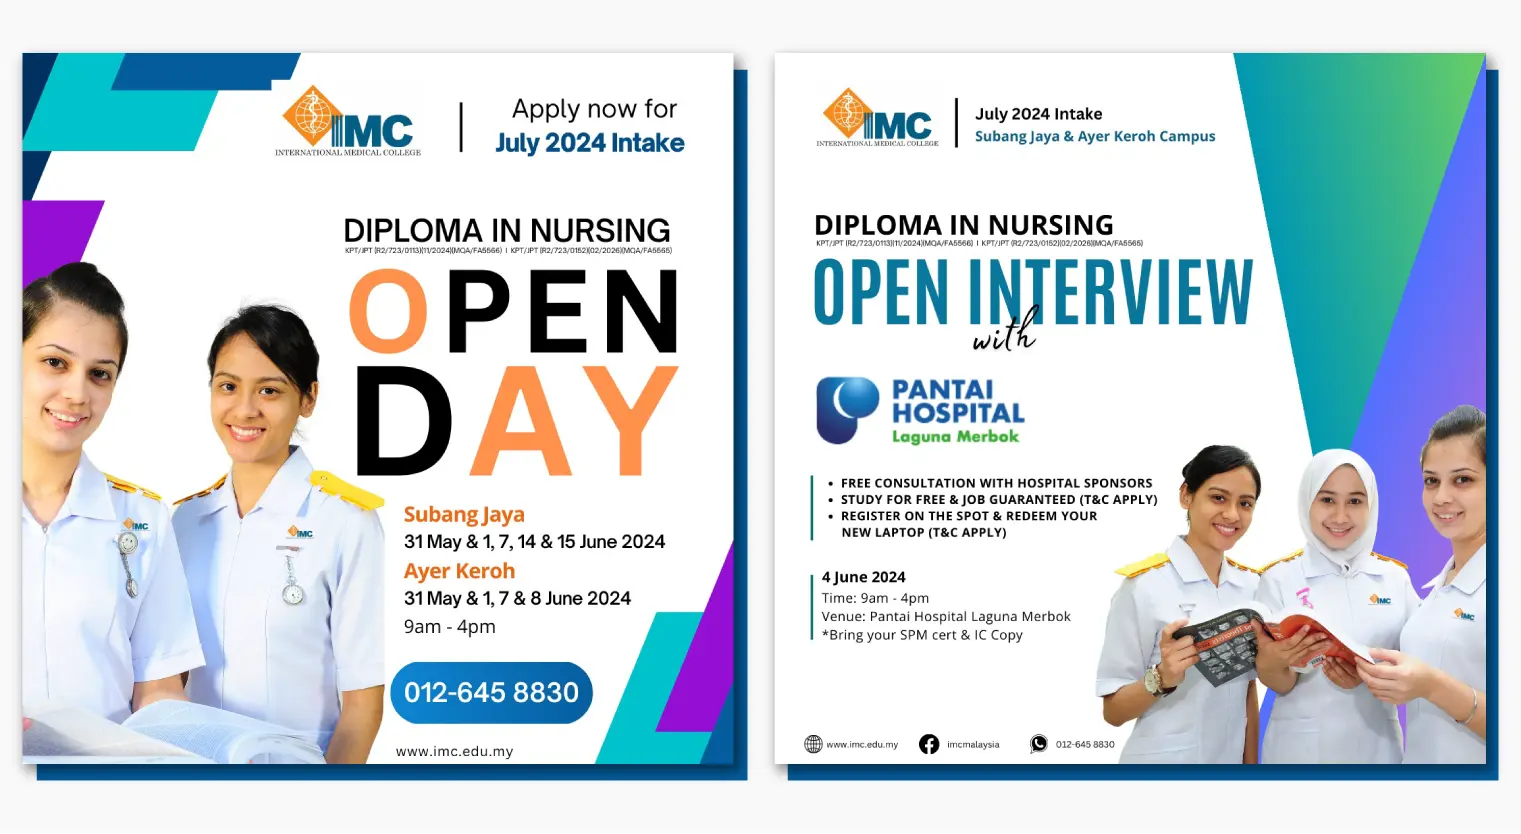 imc-open-day-open-interview-june-2024